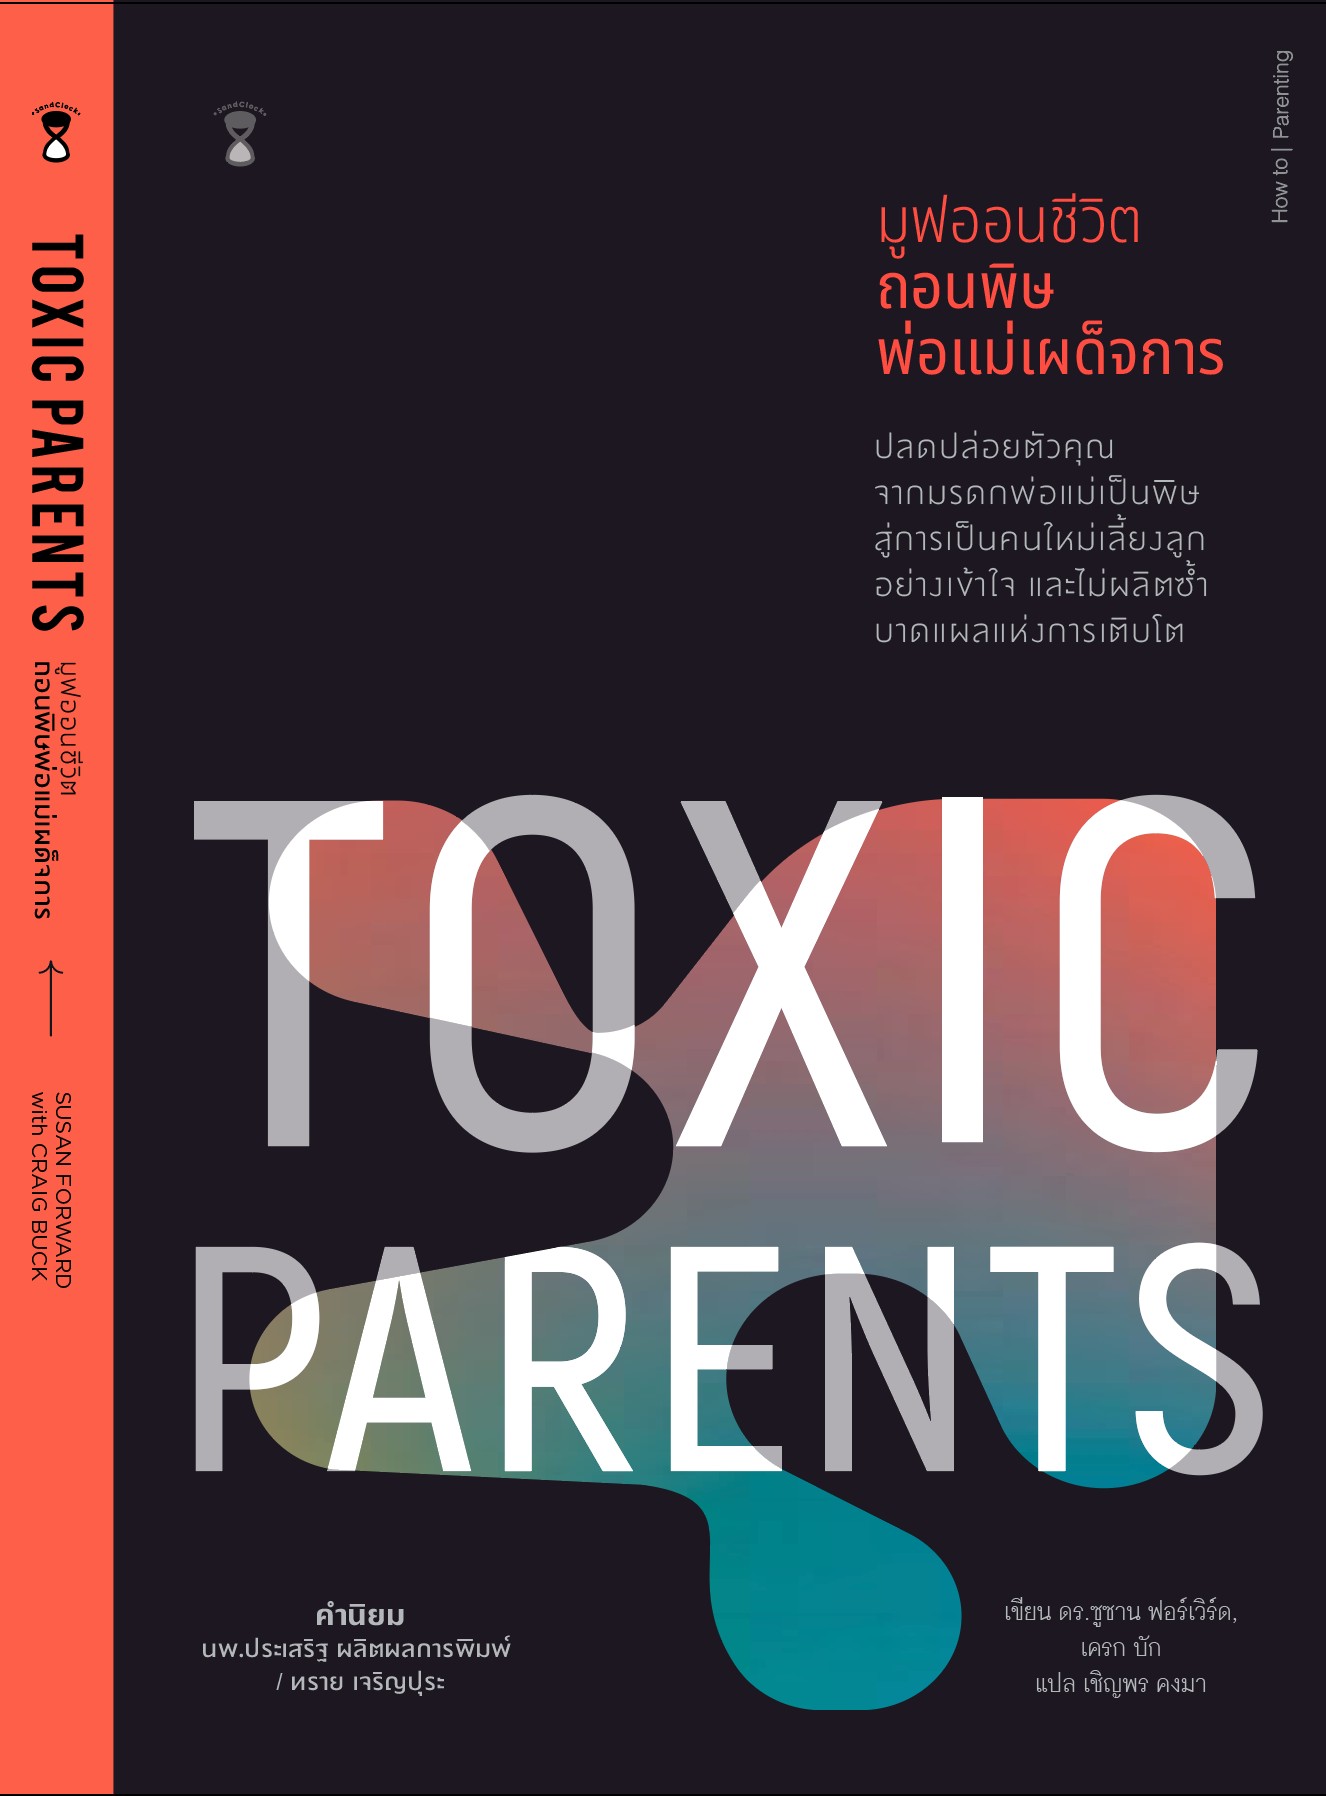 Toxic Parents มูฟออนชีวิต ถอนพิษพ่อแม่เผด็จการ - พร้อมส่ง 7 เม.ย. 65